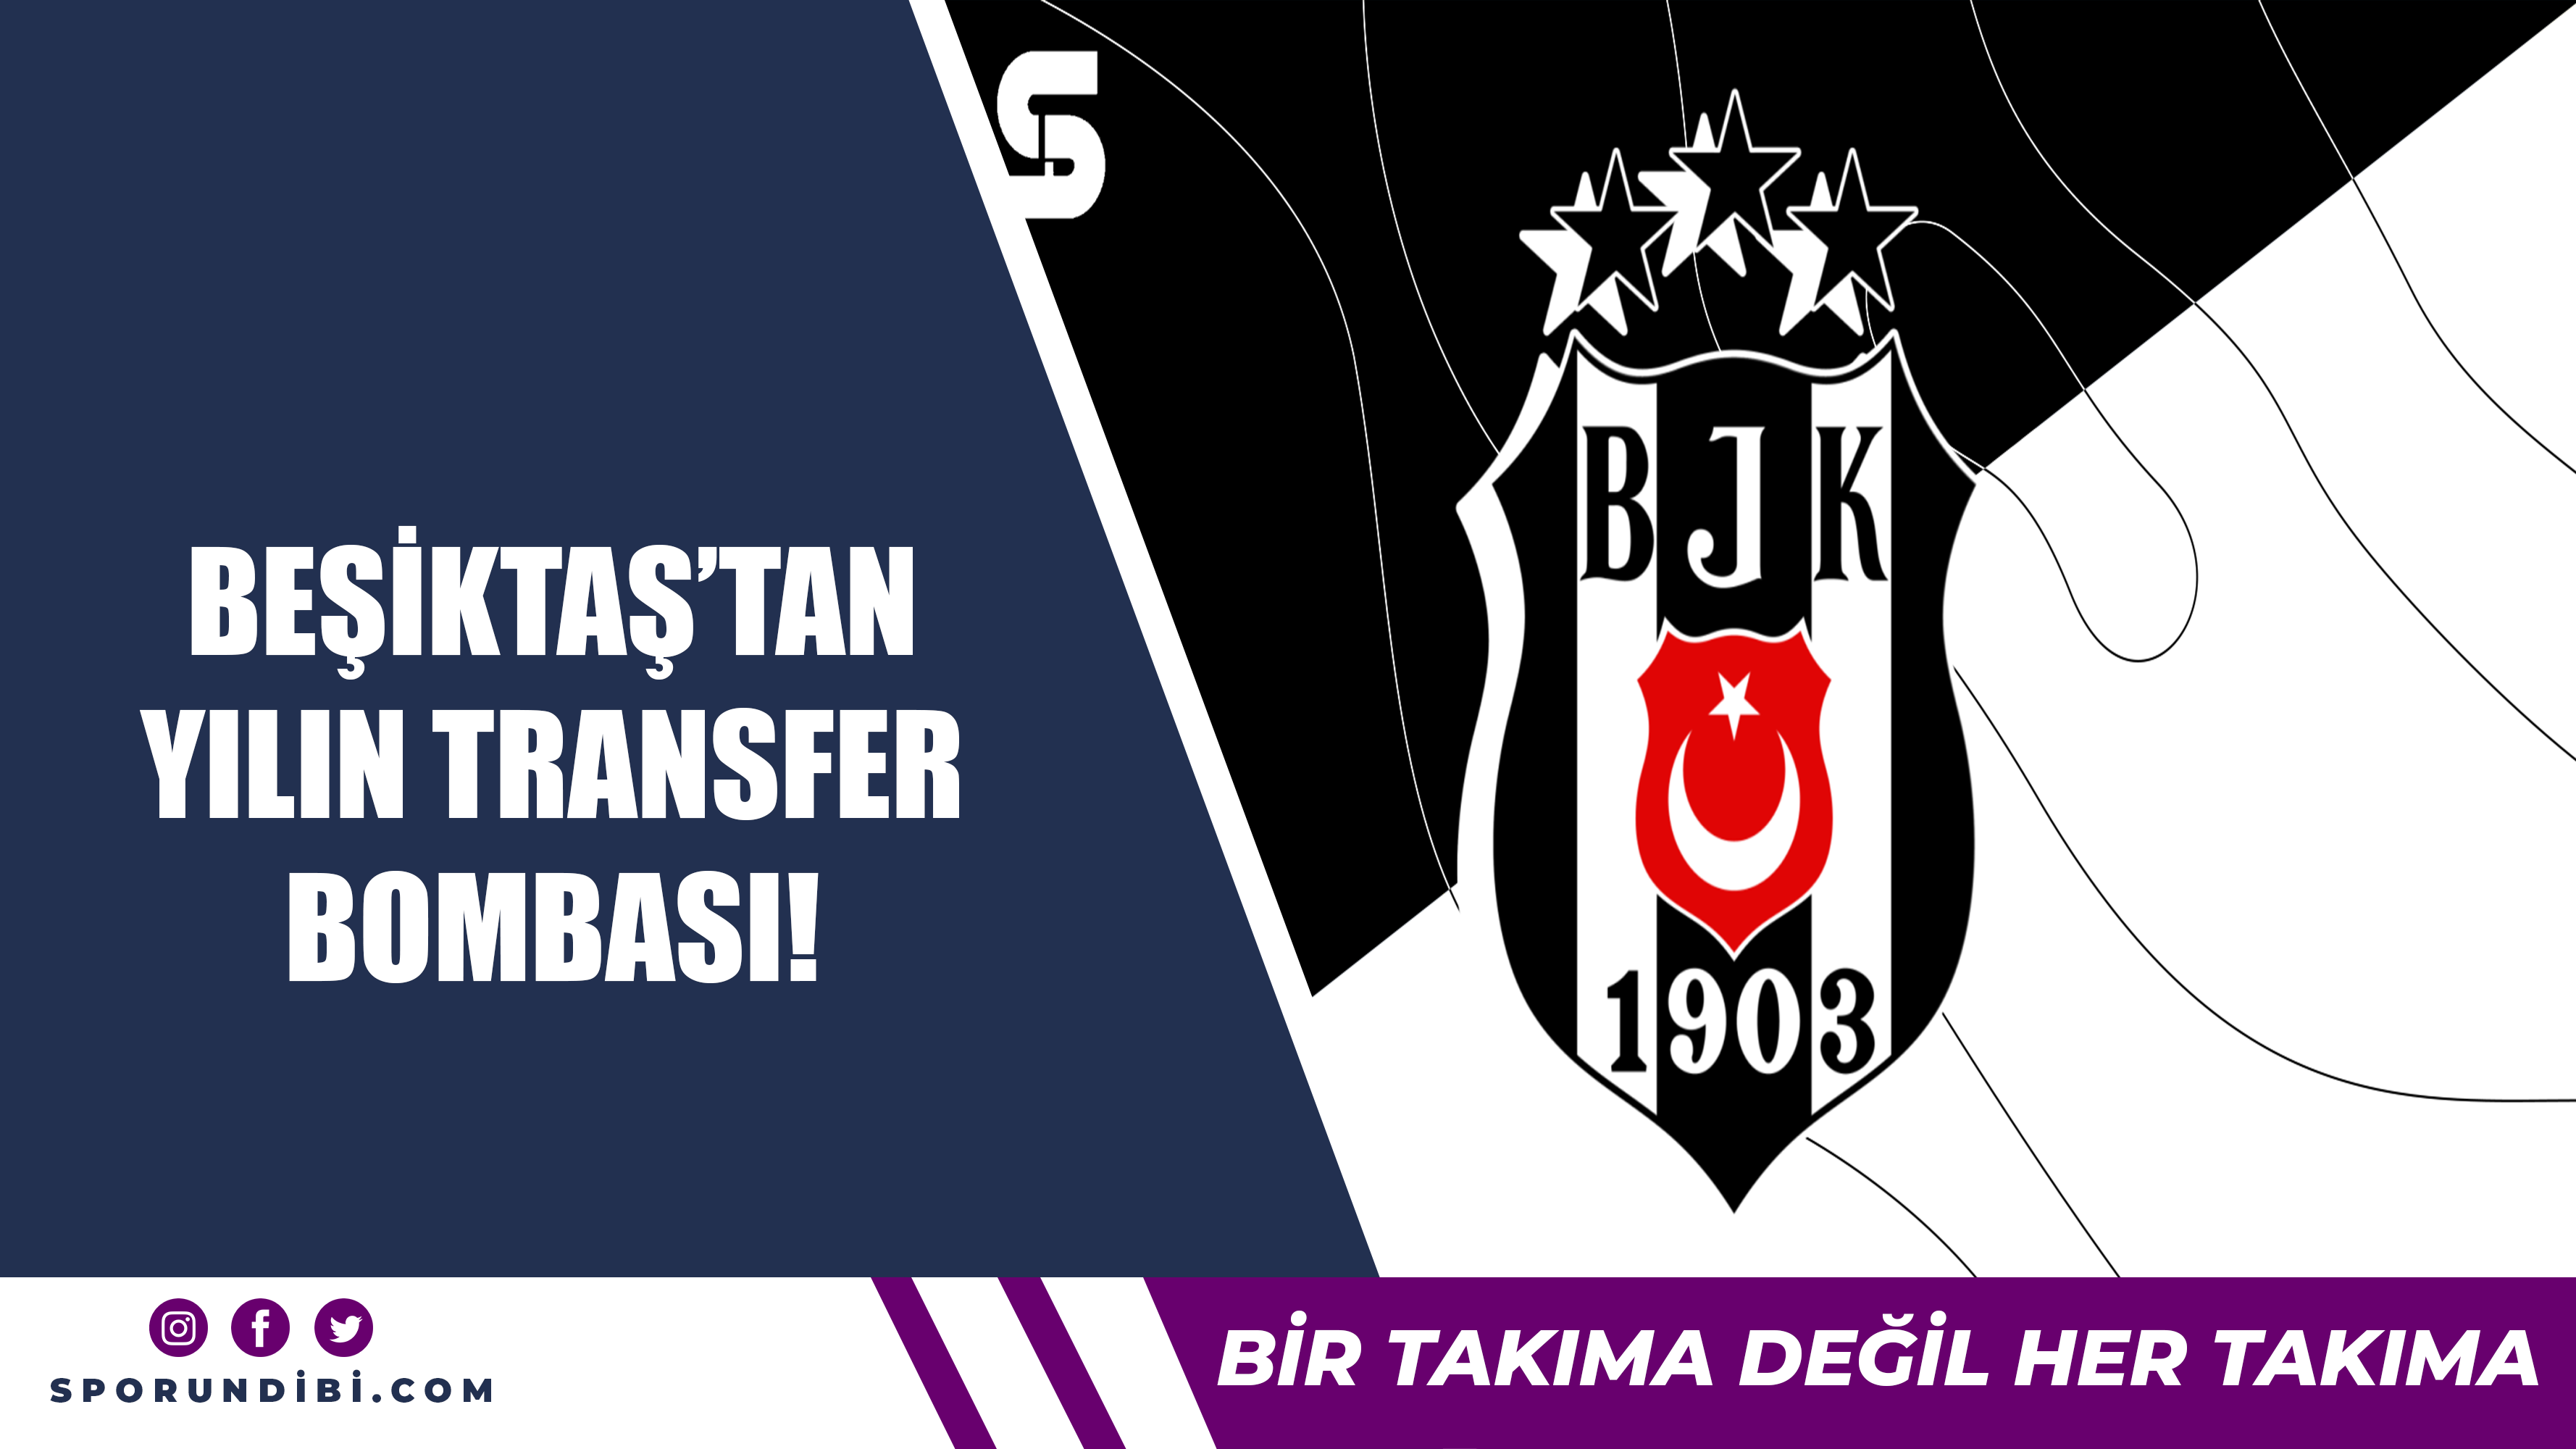 Beşiktaş'tan yılın transfer bombası!